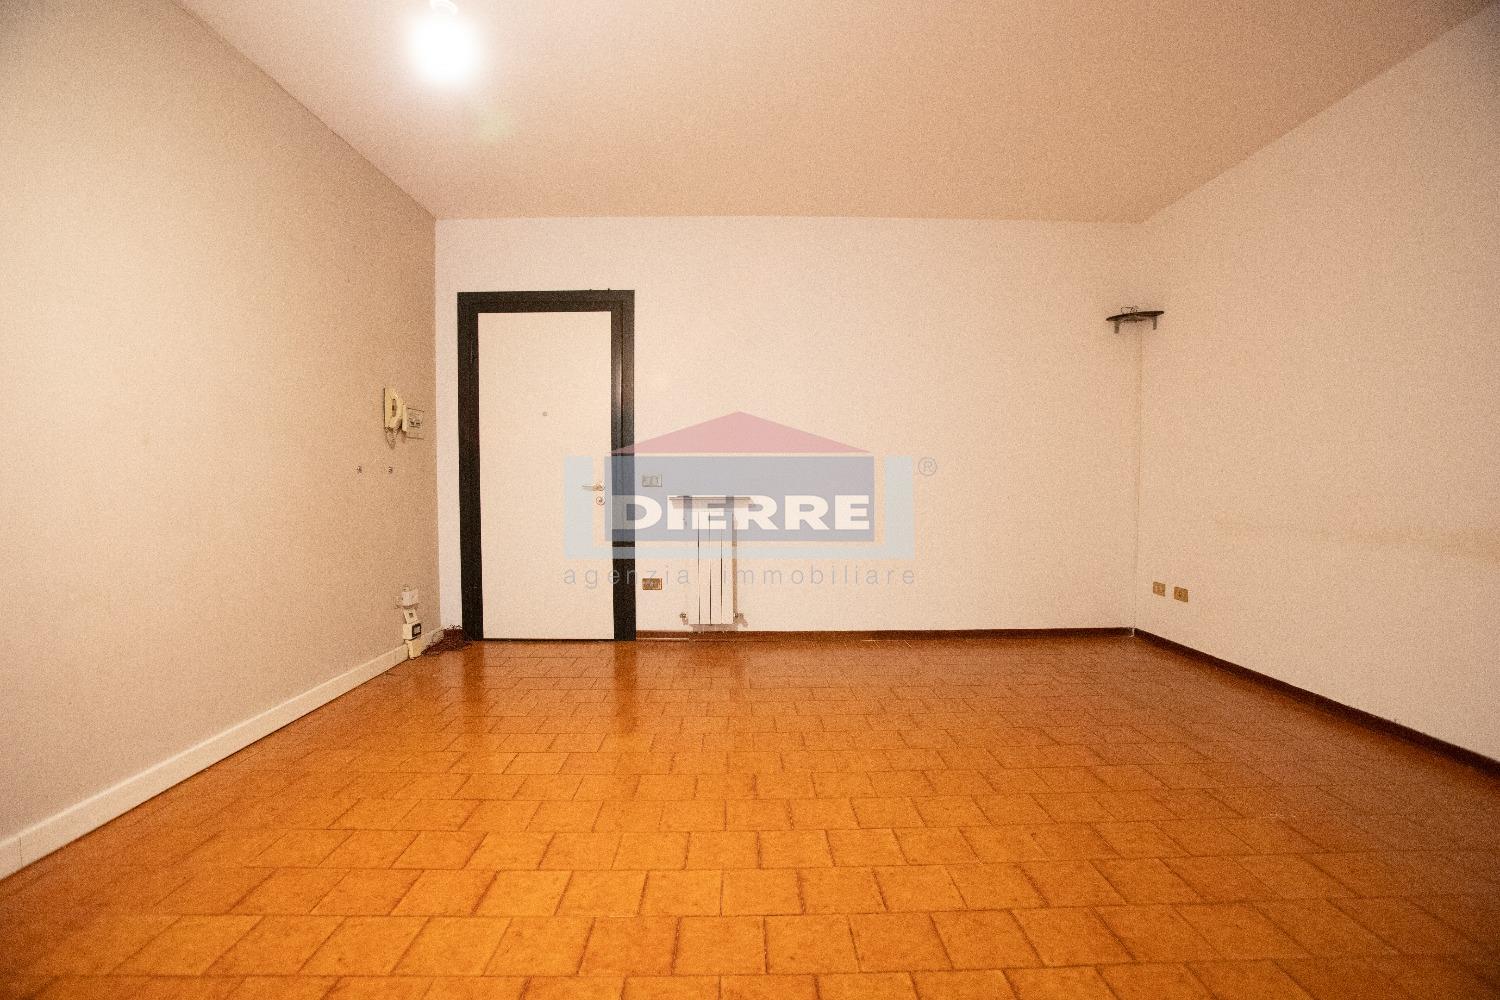 Appartamento in vendita a Carpi, 3 locali, prezzo € 115.000 | PortaleAgenzieImmobiliari.it